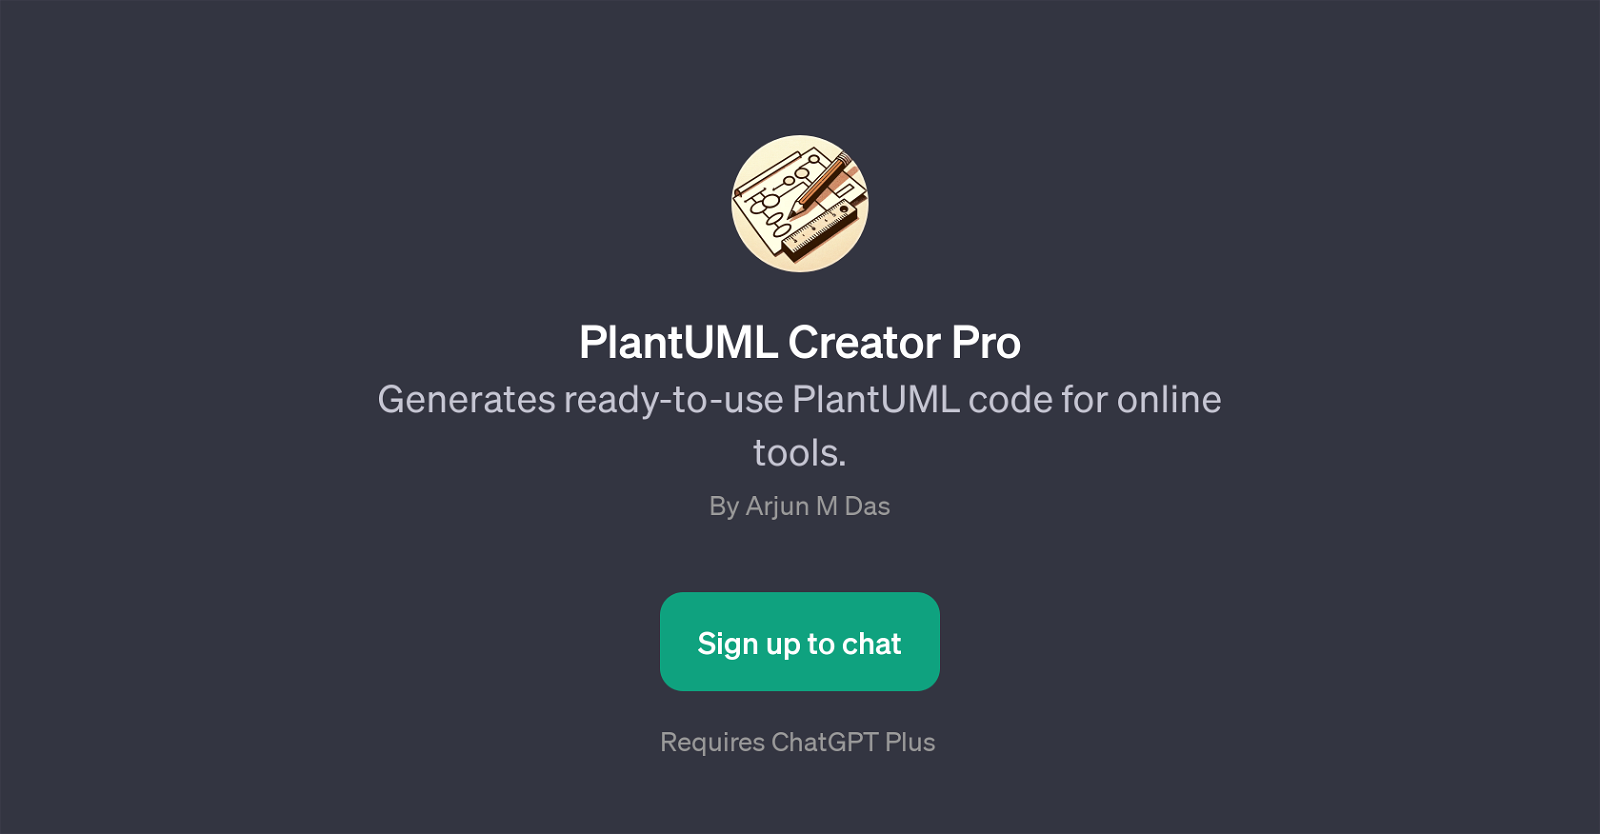 PlantUML Creator Pro website